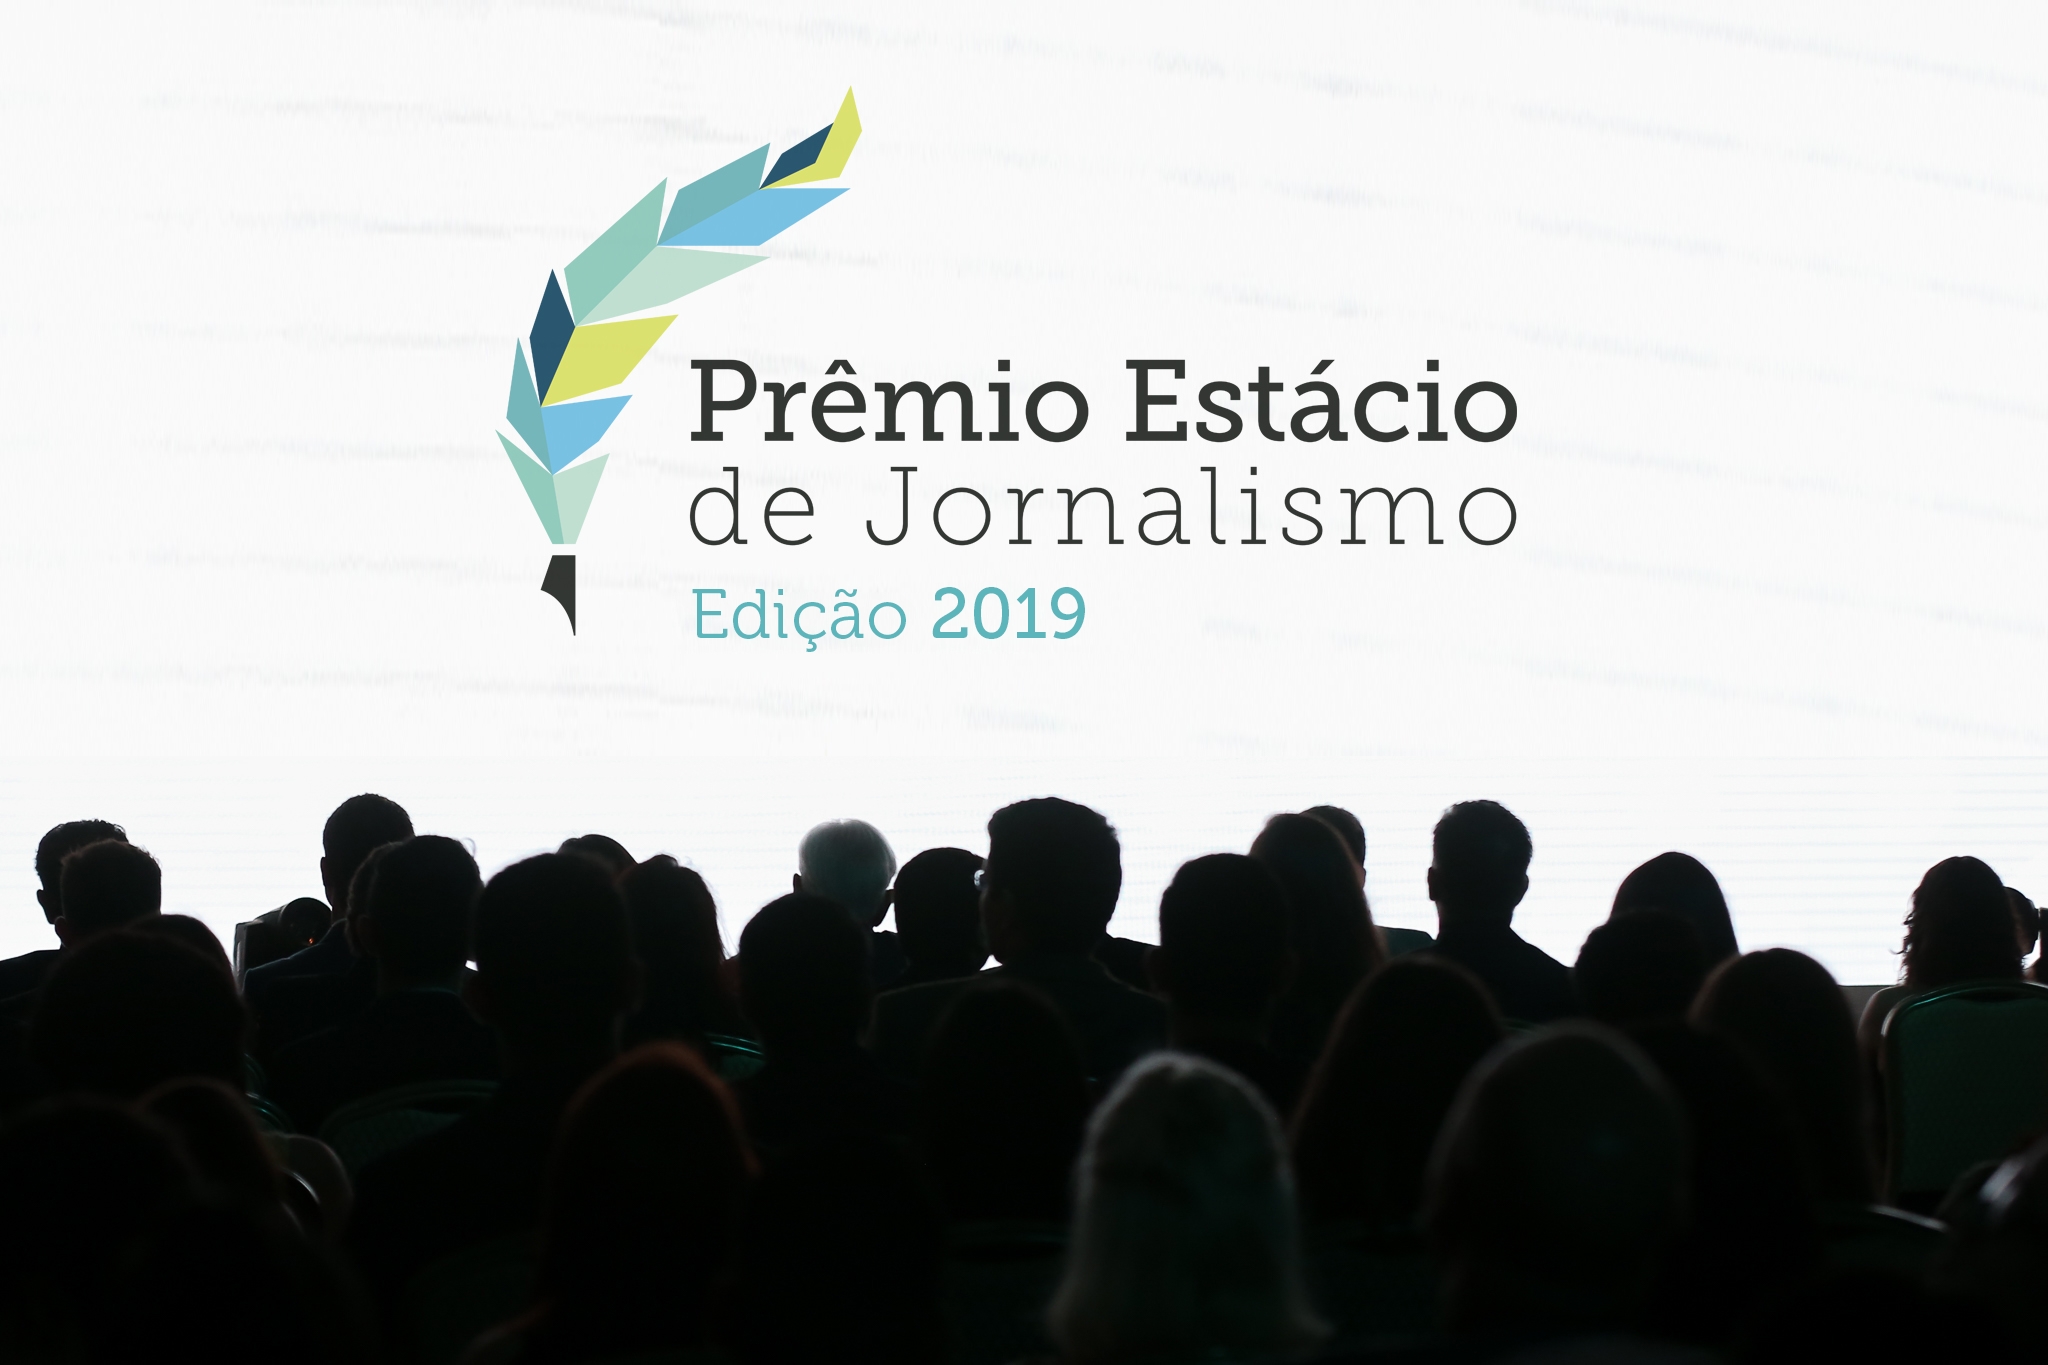 Edição 2019: Prêmio Estácio de Jornalismo recebe inscrições até dia 8 de julho